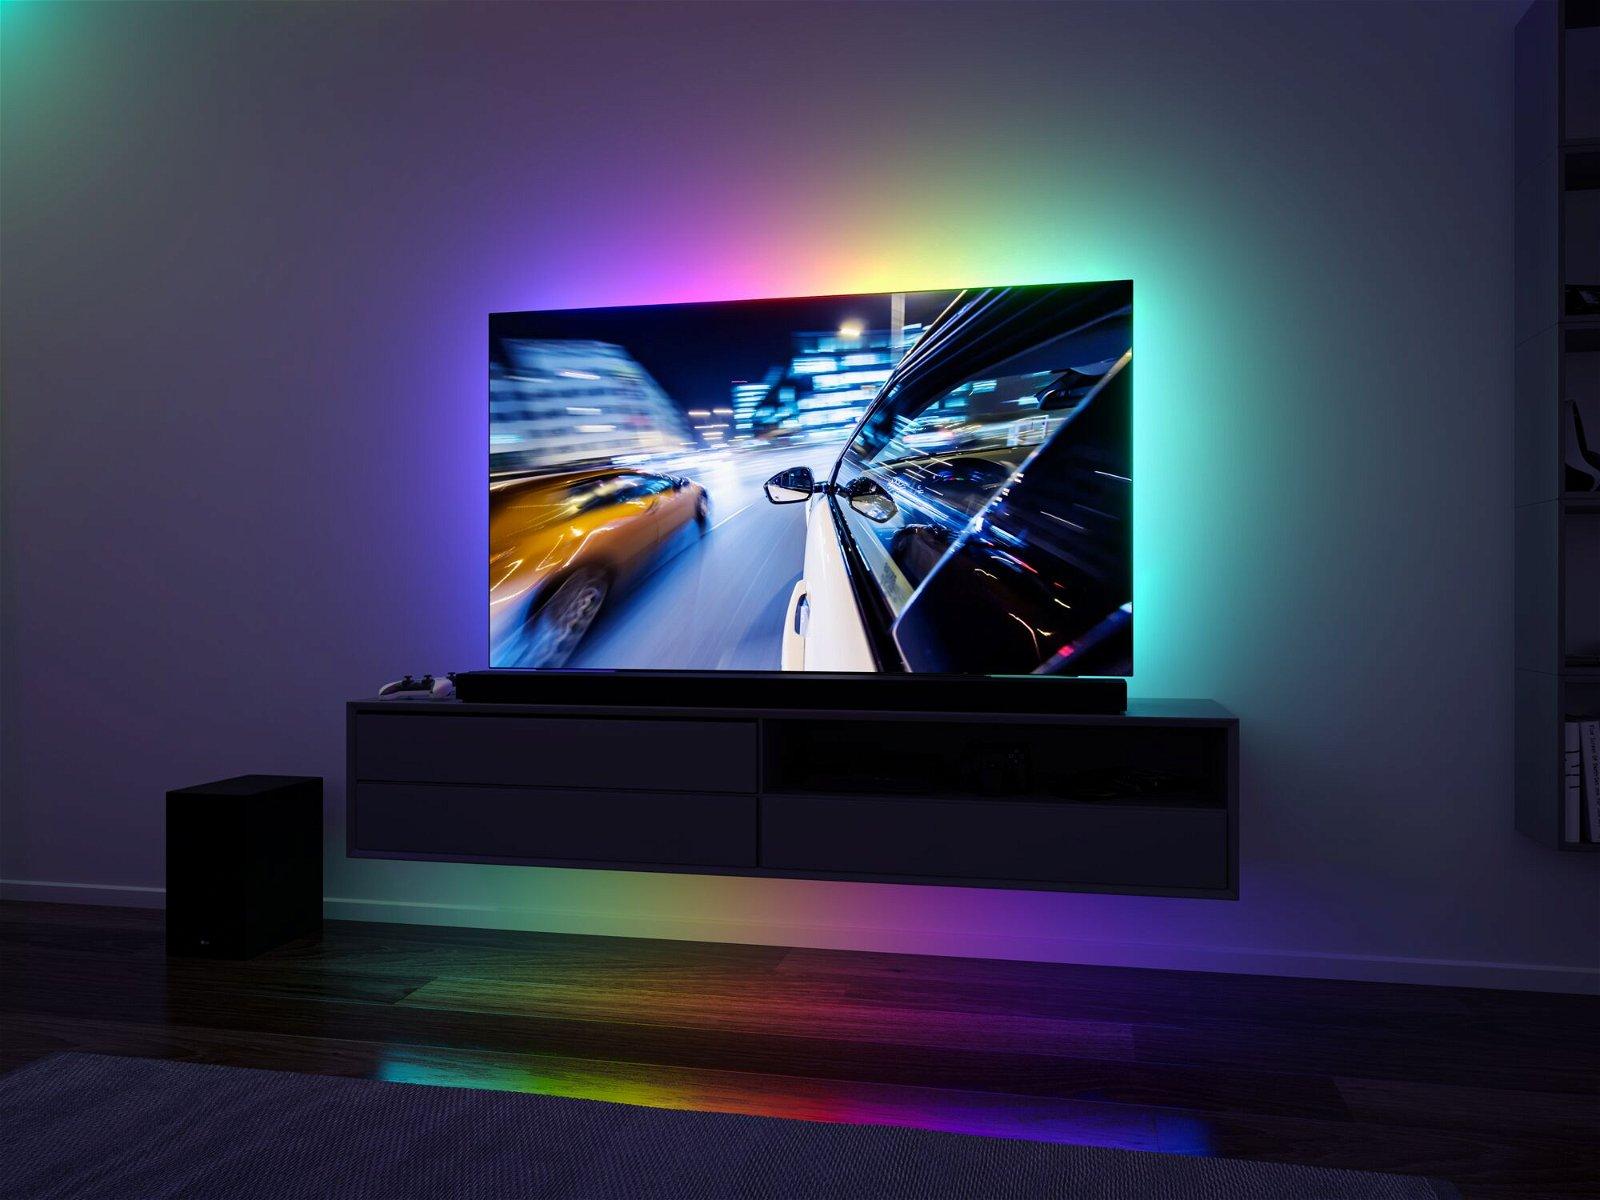 EntertainLED USB LED Strip osvětlení TV 55 Zoll 2m 3,5W 60LEDs/m RGB+ - PAULMANN